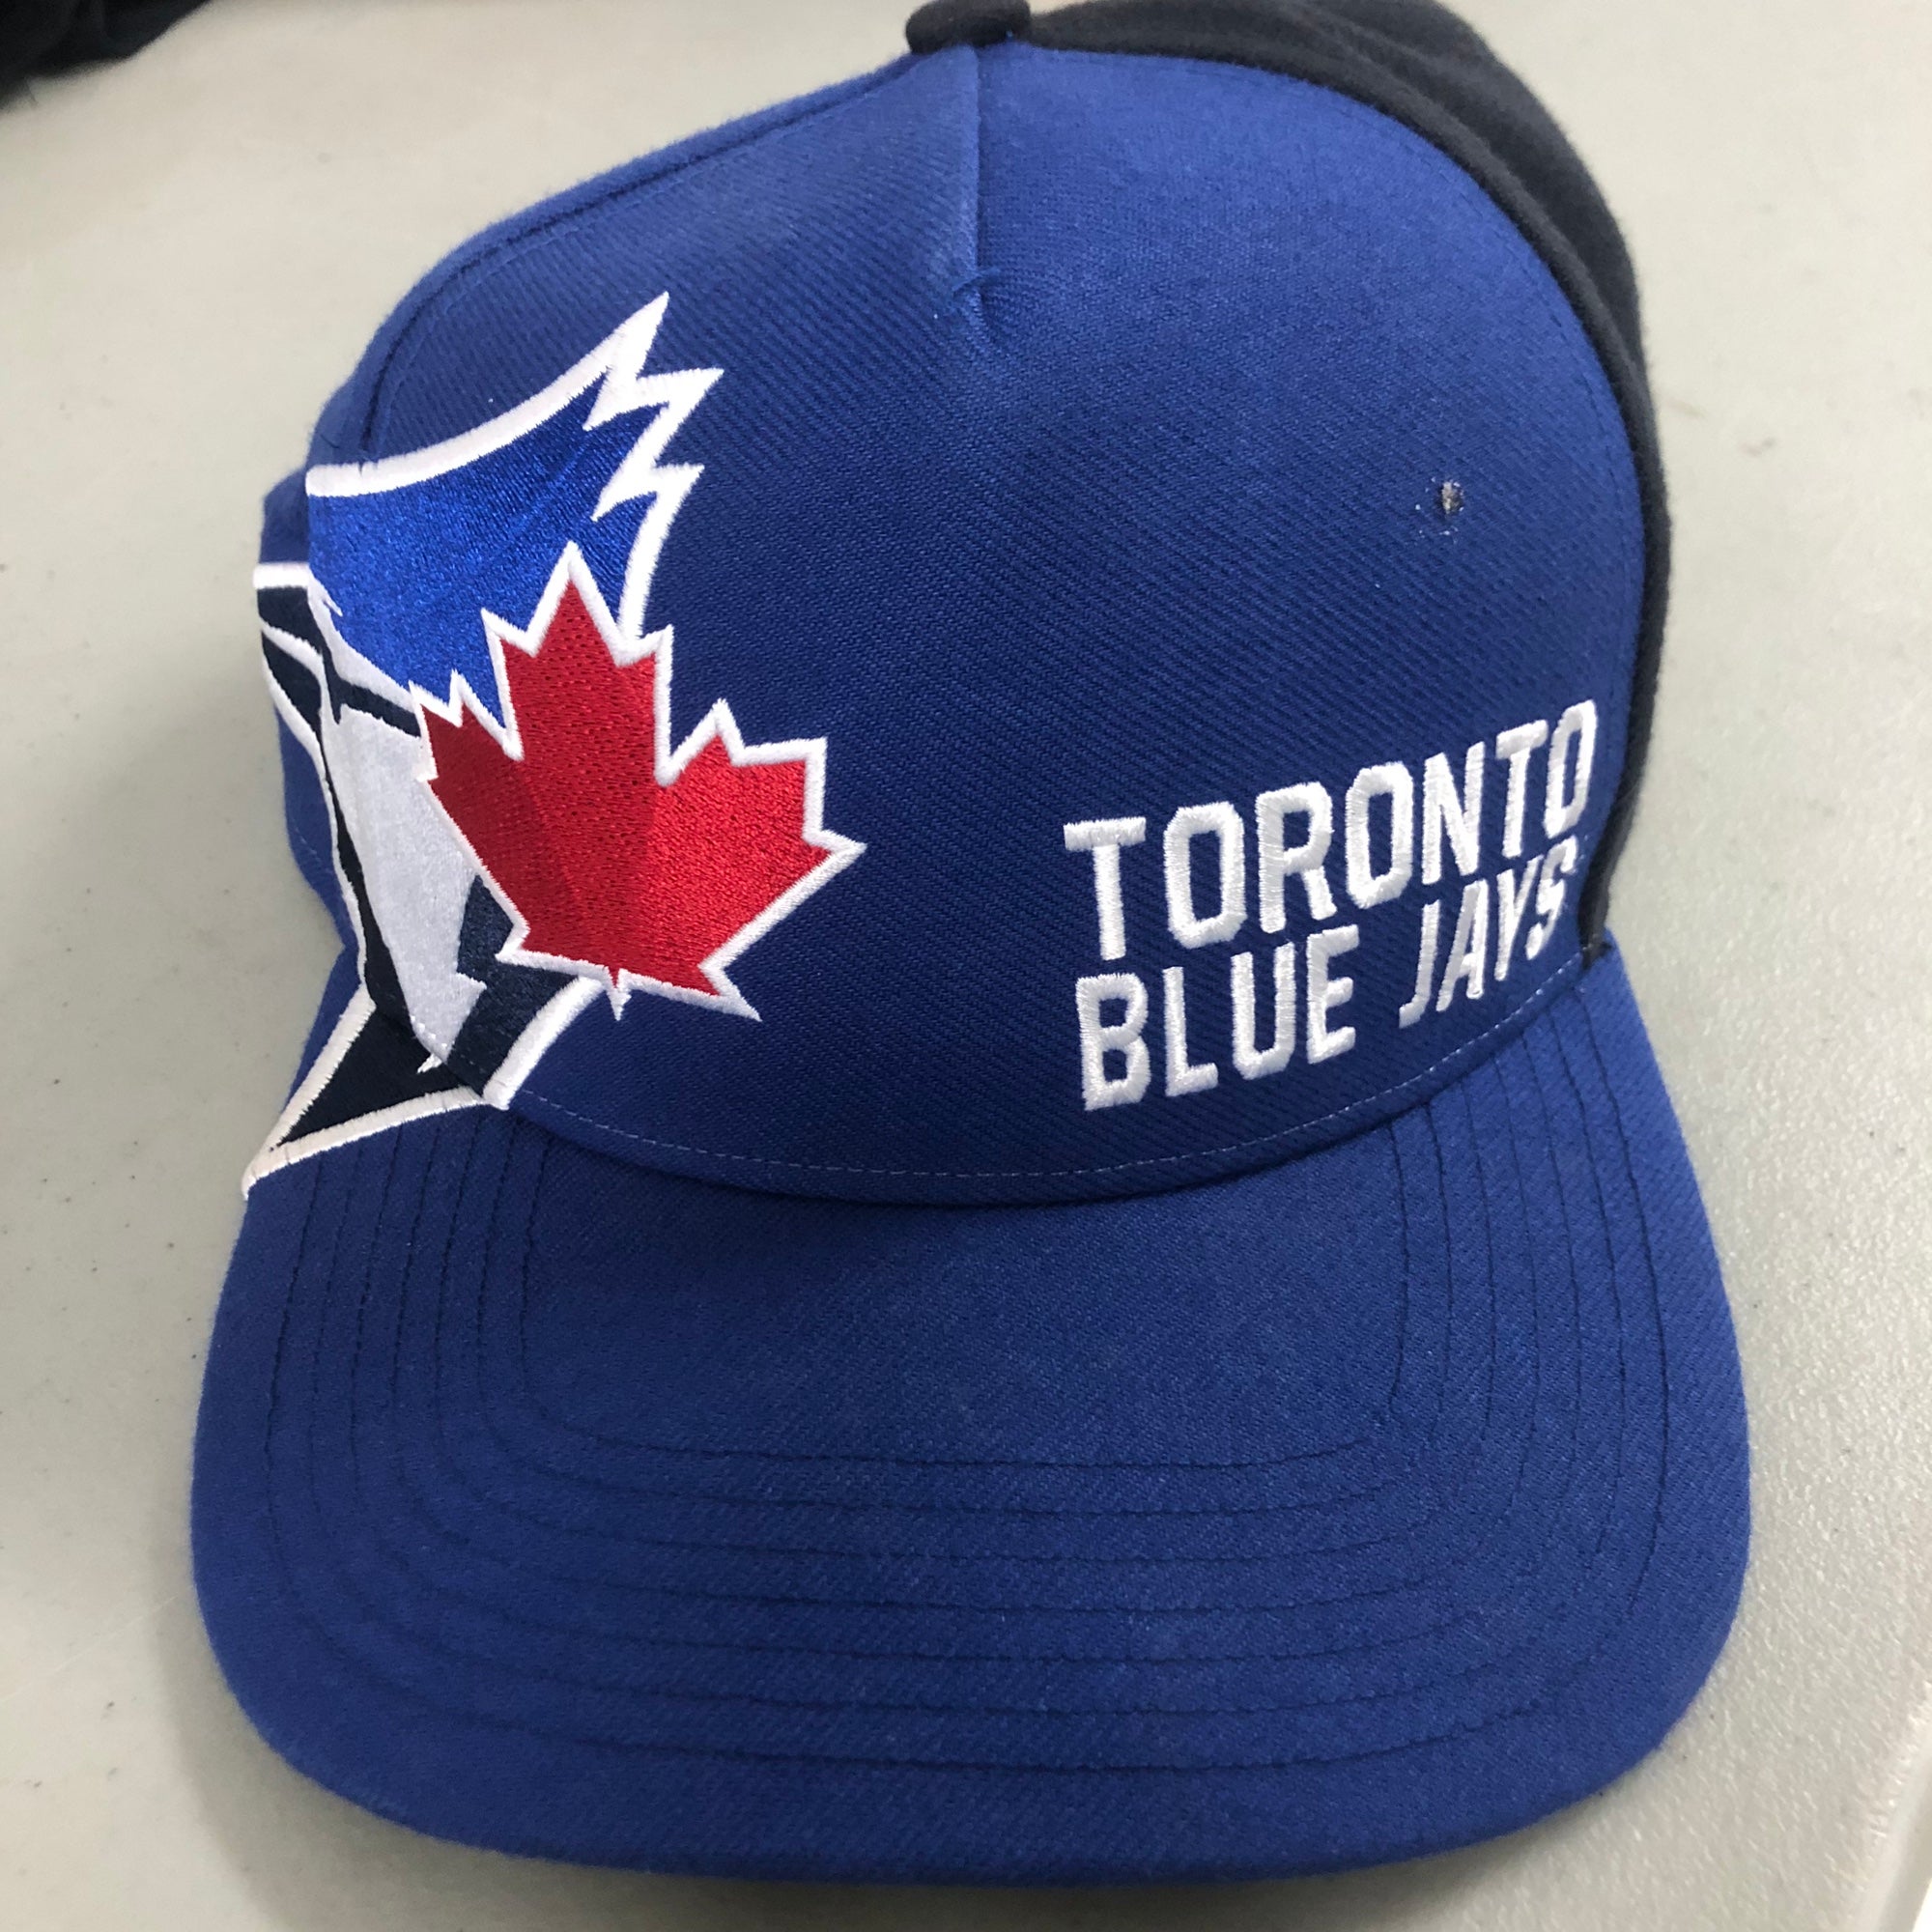 NEW Toronto Blue Jays MLB hat